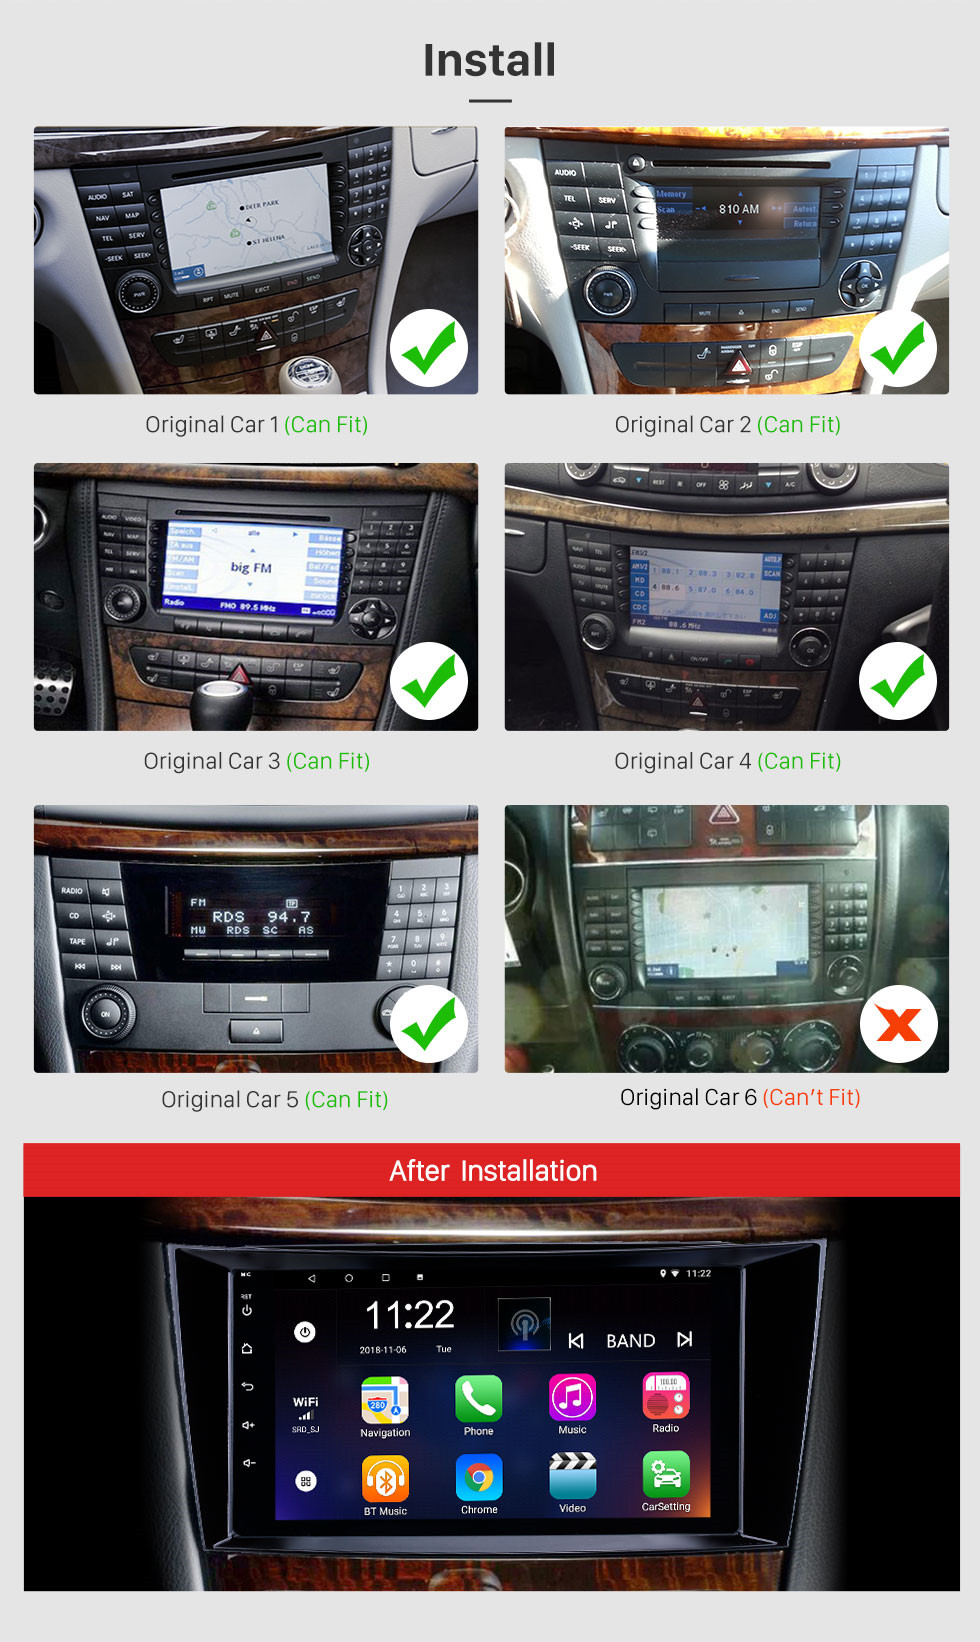 Seicane 8 pulgadas Android 12.0 Radio IPS Pantalla completa Navegación GPS Reproductor multimedia para automóvil para 2005-2010 Mercedes Benz CLS W219 CLS350 CLS500 CLS55 con RDS 3G WiFi Bluetooth Mirror Link OBD2 Control del volante